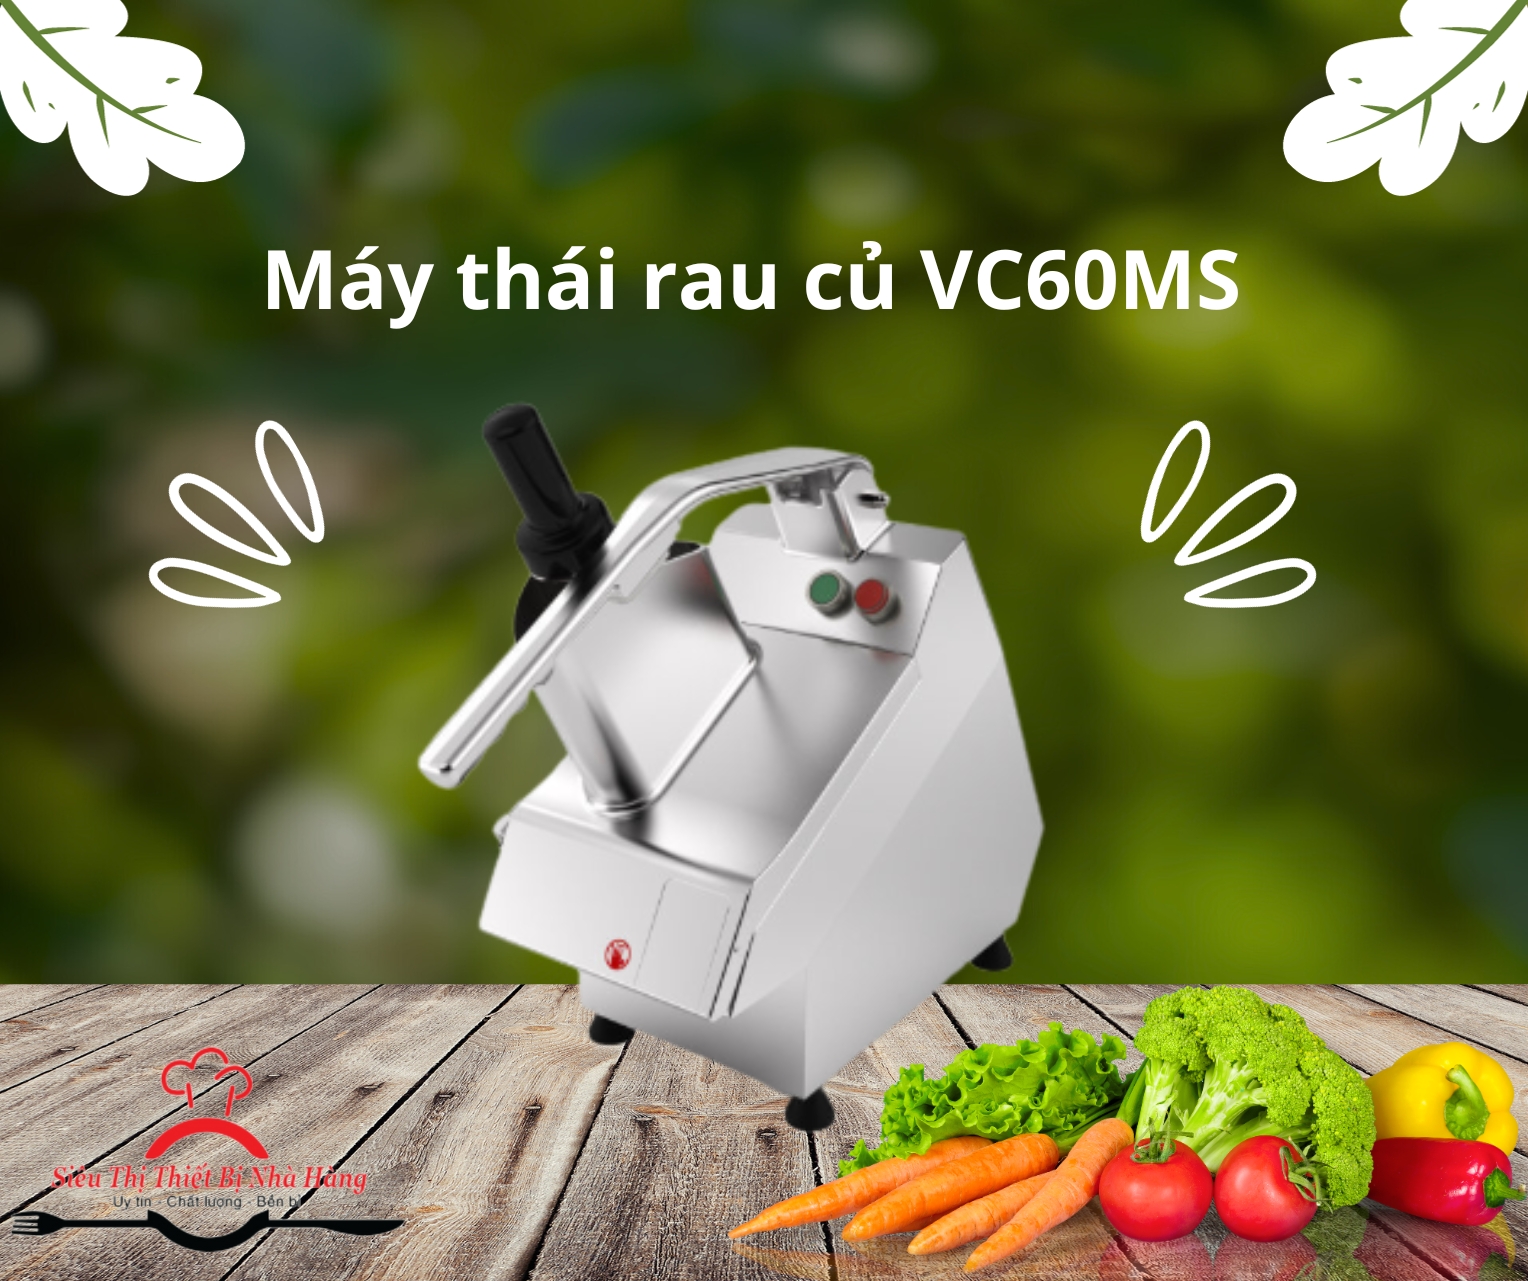 MÁY THÁI RAU CỦ VC60MS: Giải pháp hiệu quả cho cơ sở sản xuất rau củ sấy khô